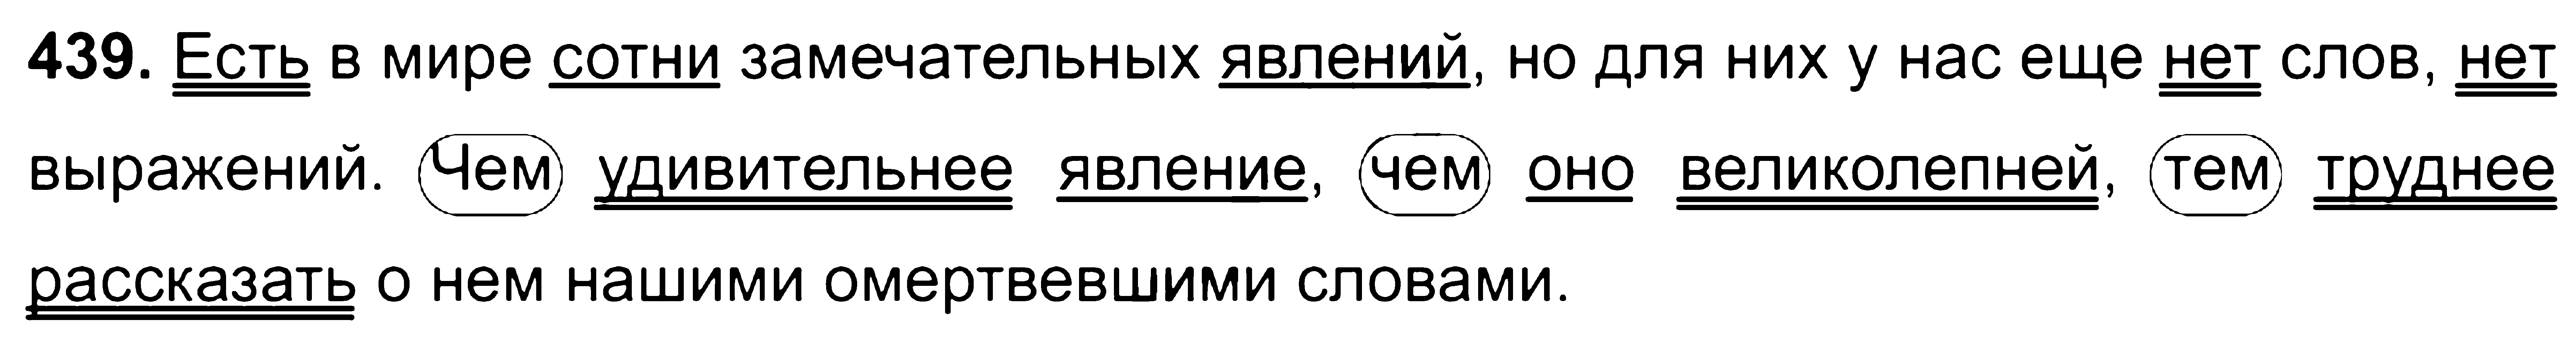 ГДЗ Русский язык 8 класс - 439